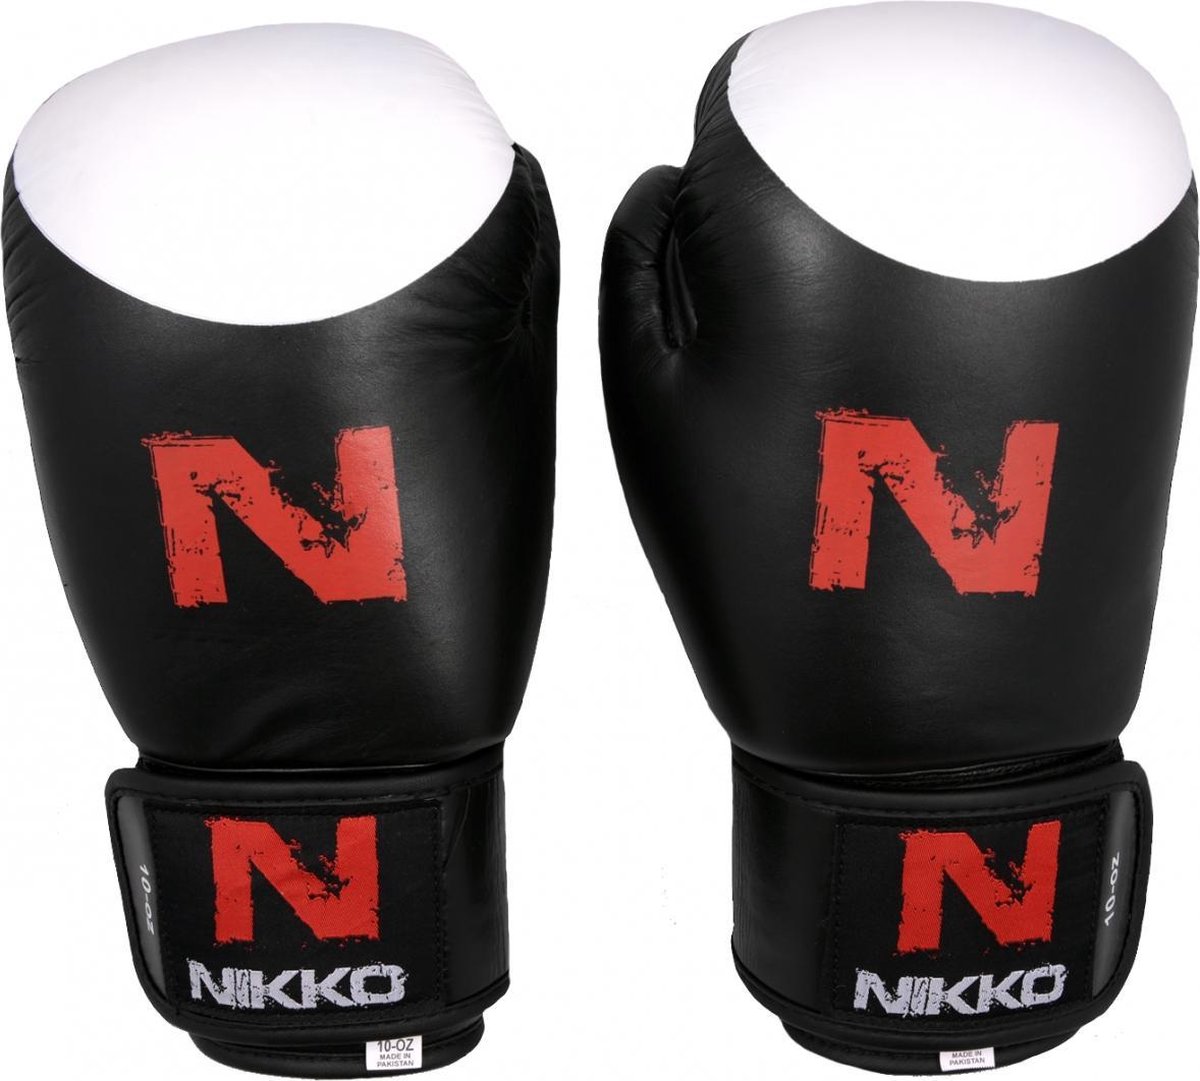 Nikko bokshandschoenen Target 14oz